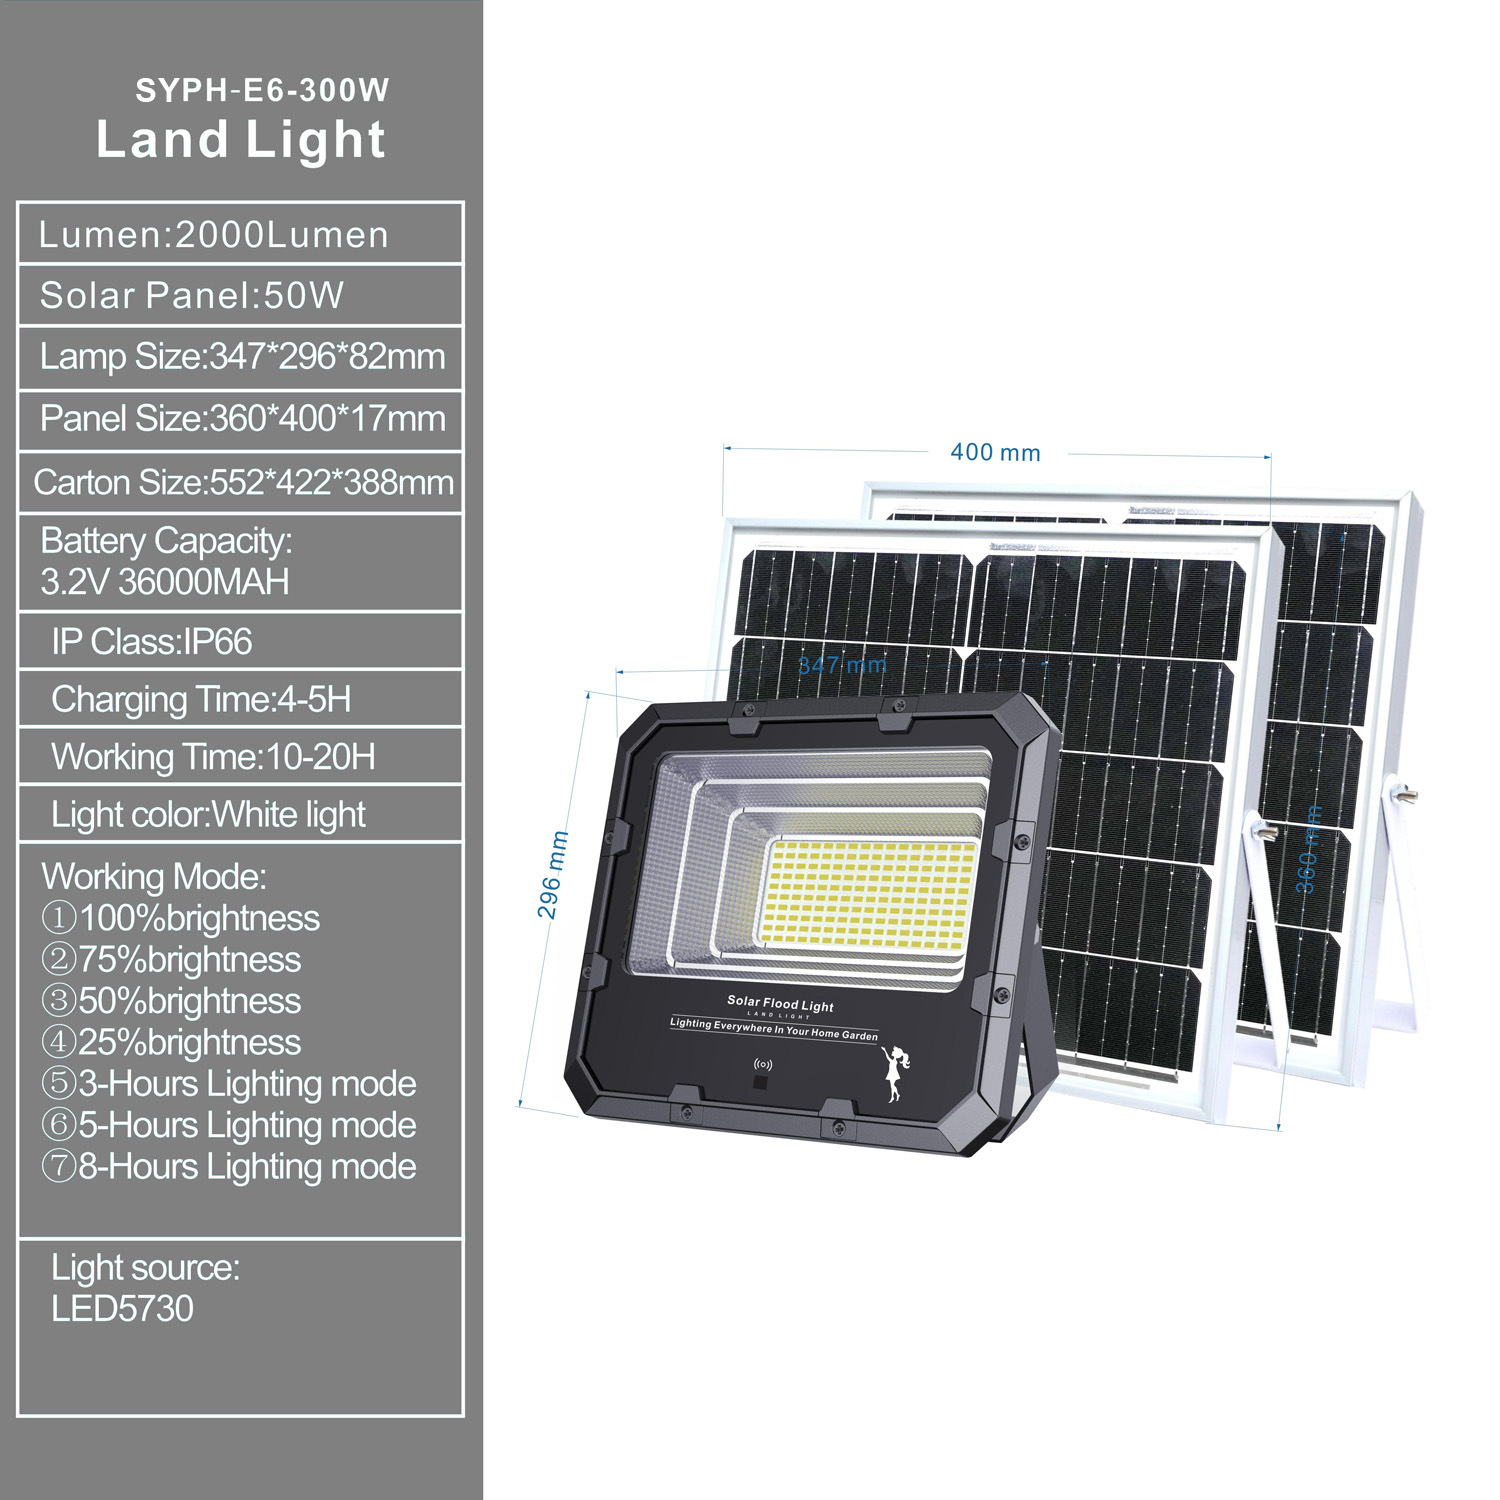 Luz terrestre solar exterior / Luz LED solar / Luz de inundación solar 300W